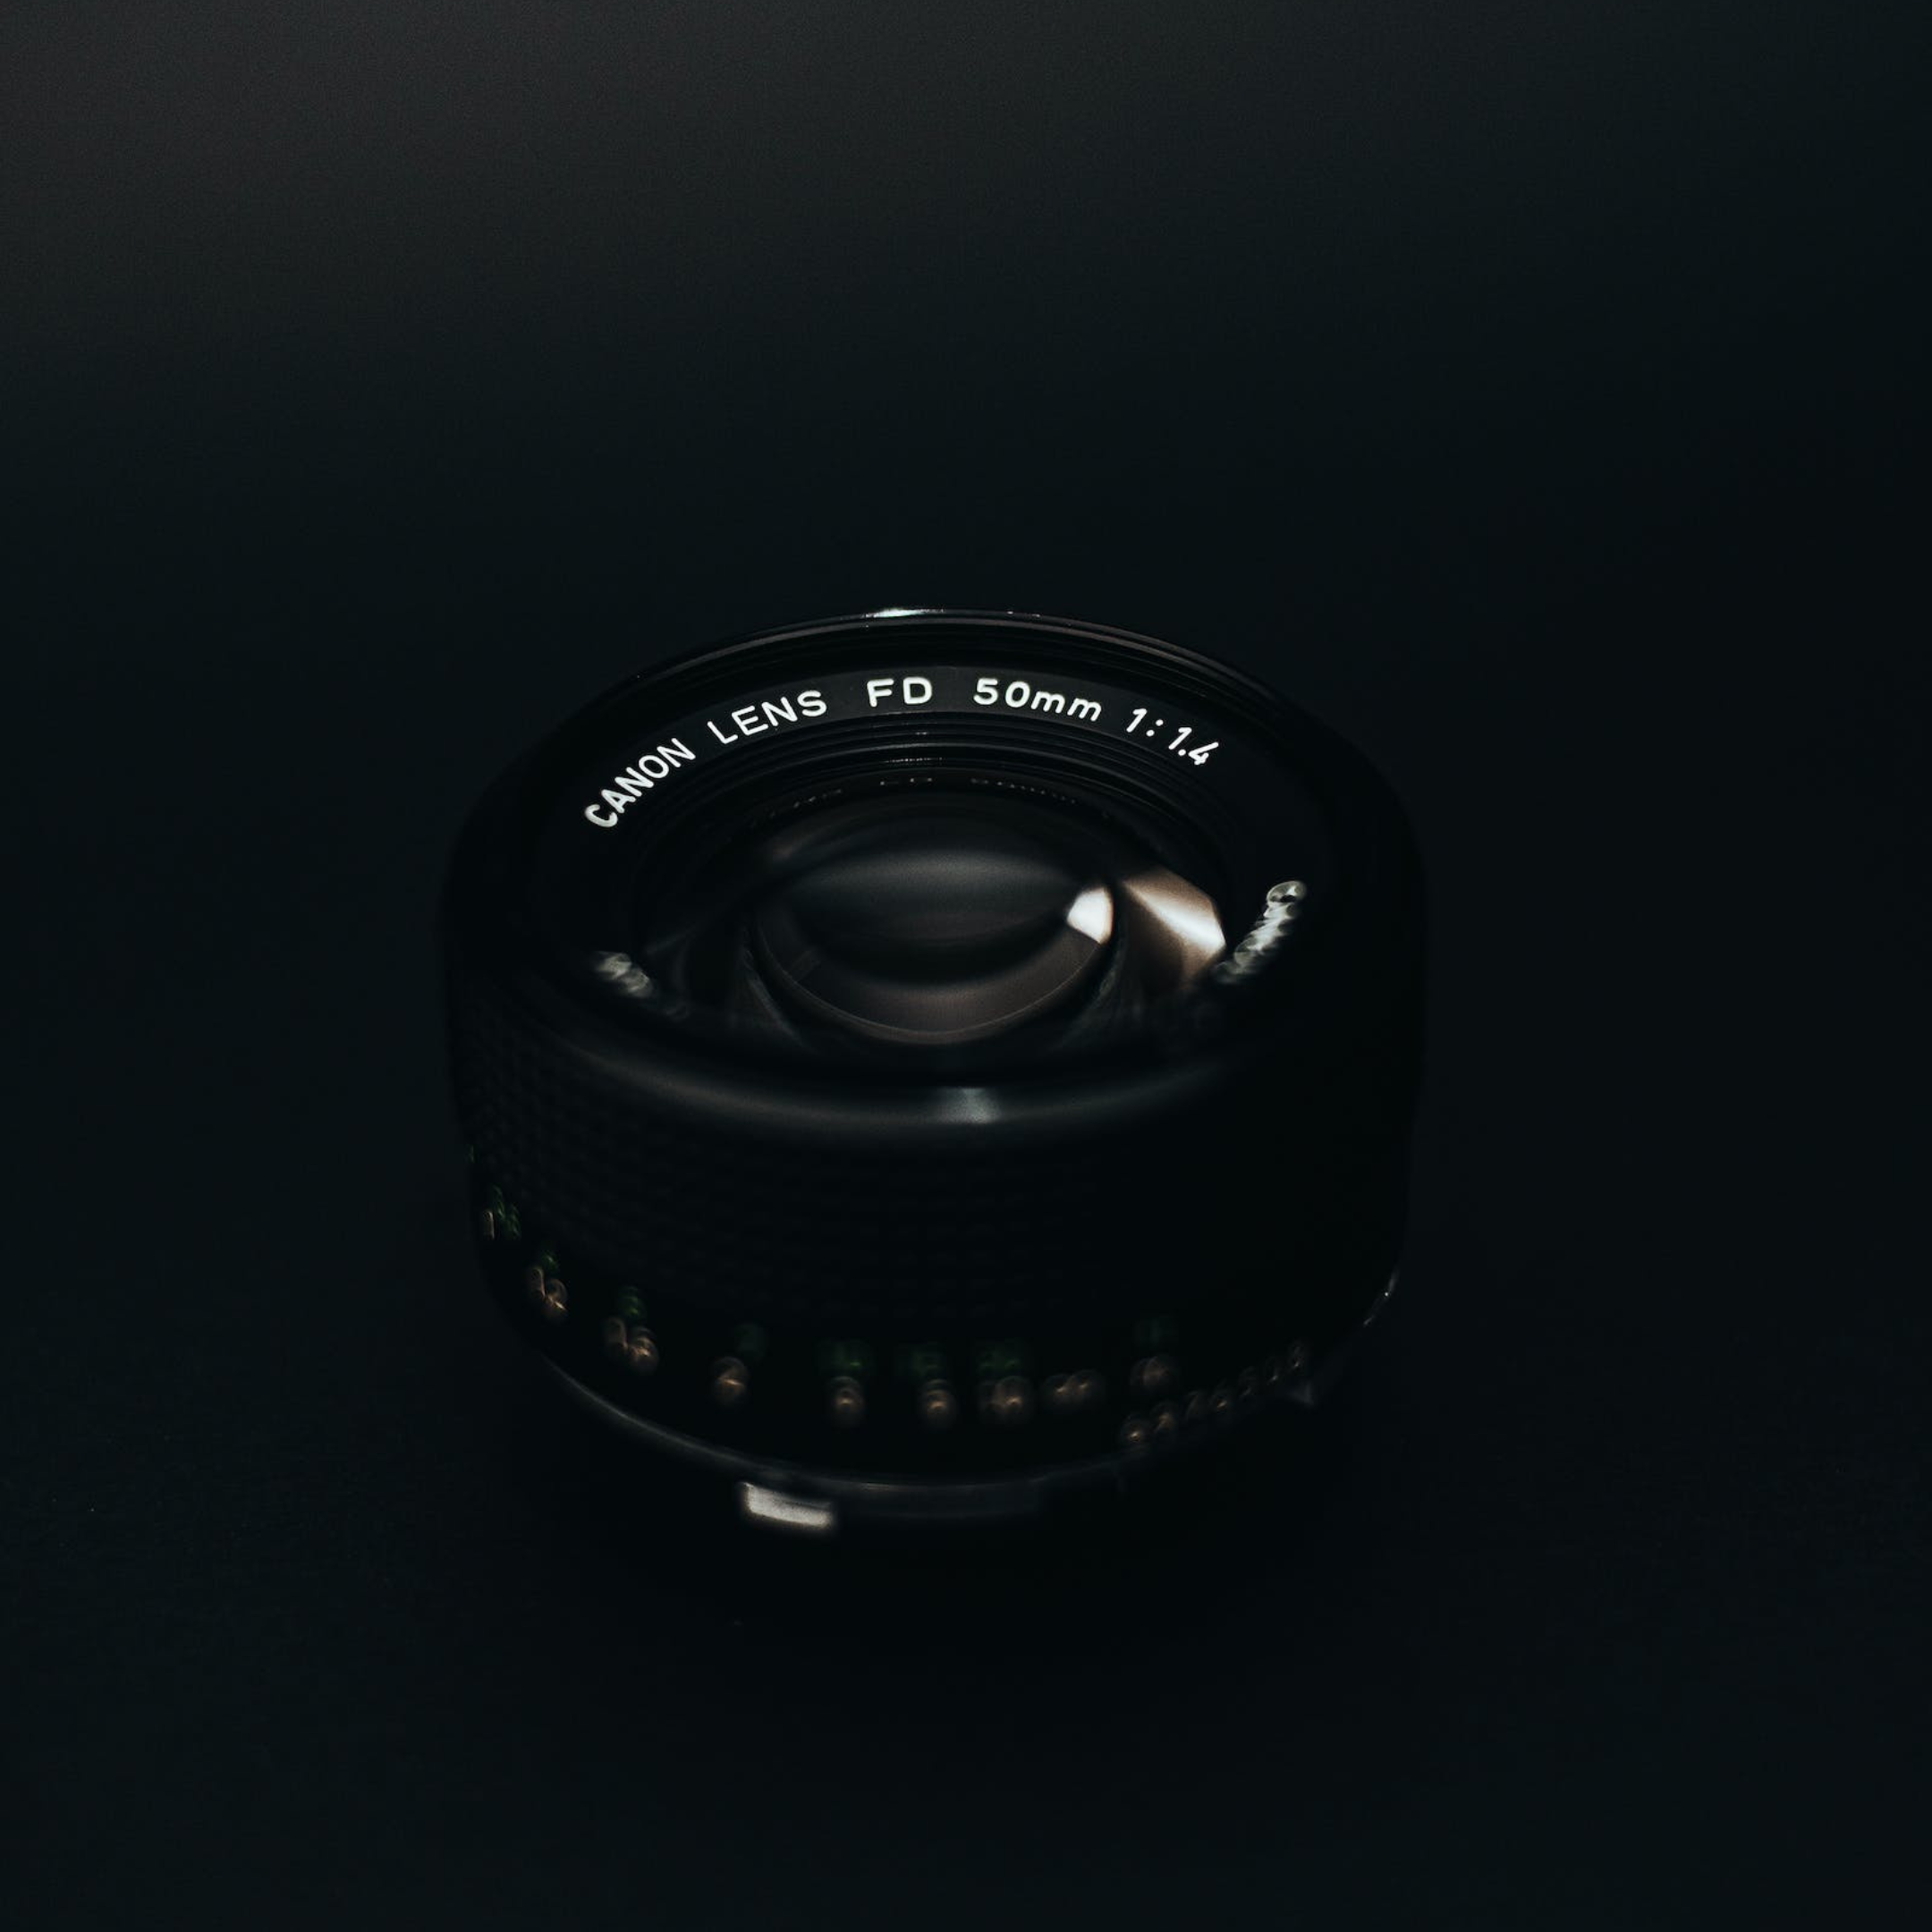 Cannon EOS R8 : RF Lens